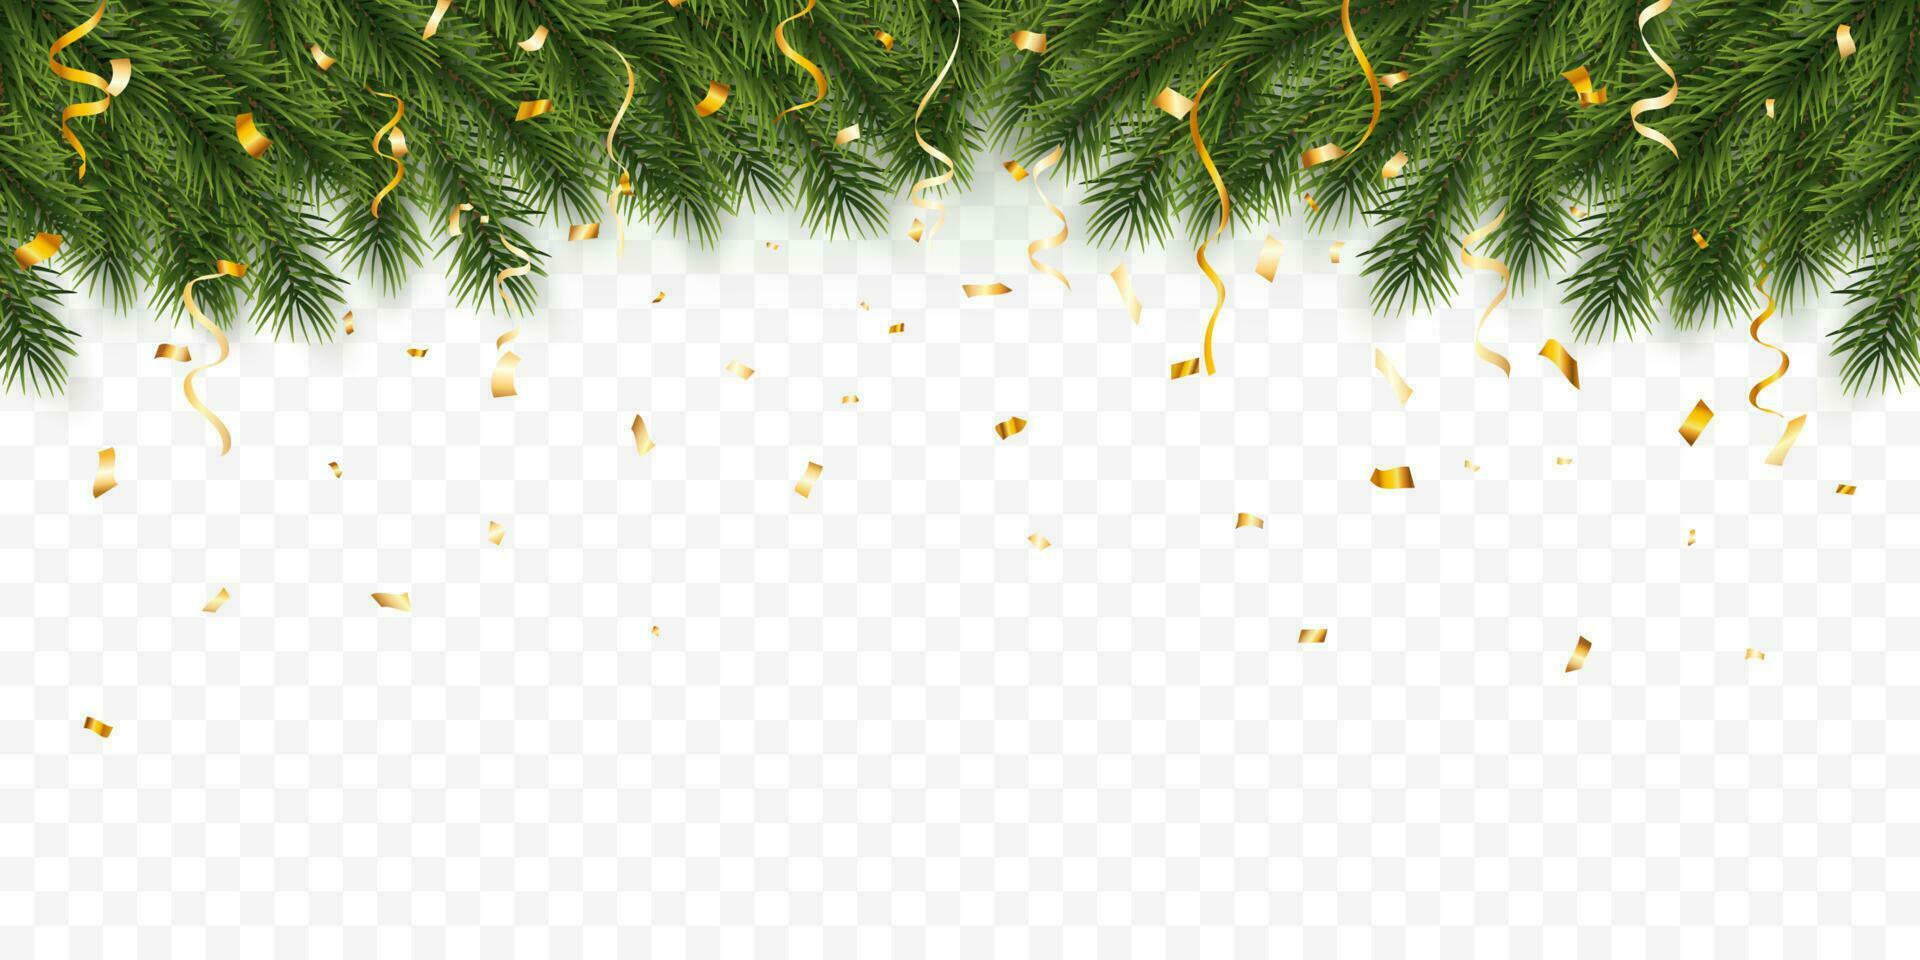 festlig jul eller ny år bakgrund. jul gran grenar med konfetti. högtider bakgrund. vektor illustration